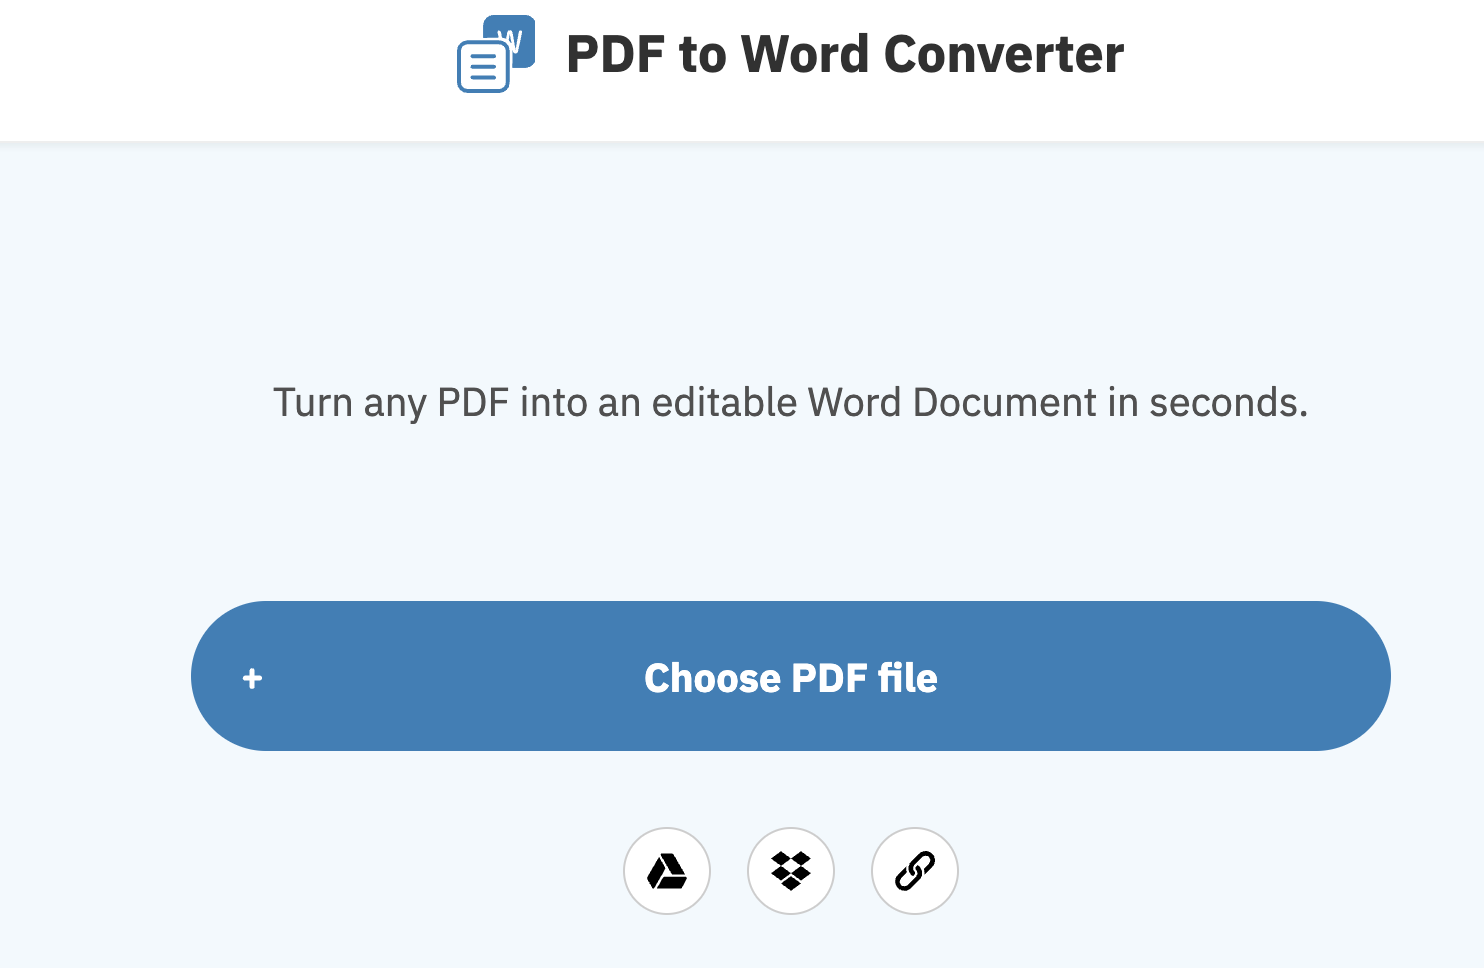 Free PDF conversion